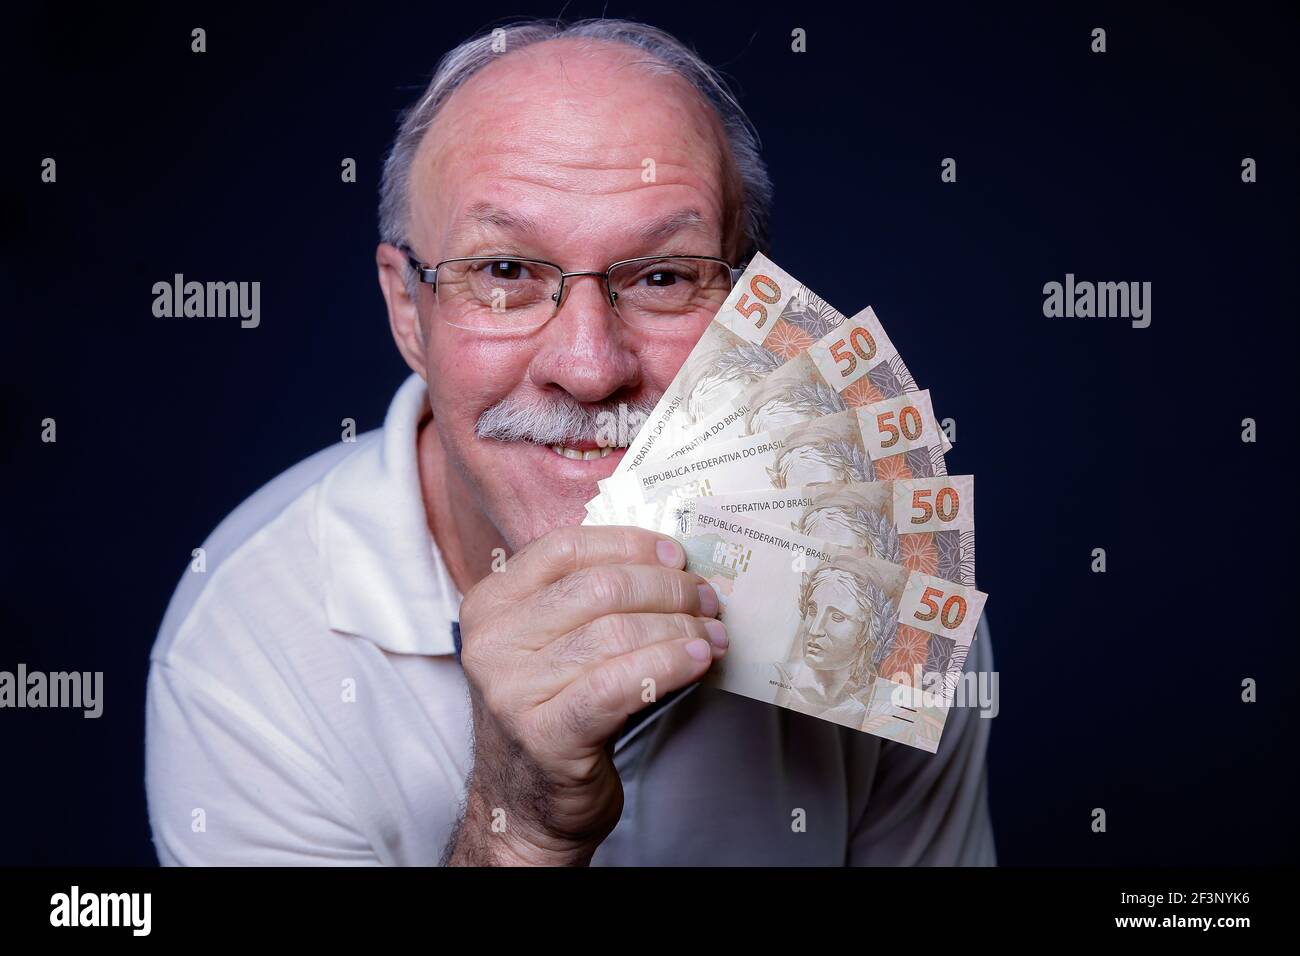 Homme adulte blanc souriant à la caméra et tenant plusieurs brésilien factures d'argent réel Banque D'Images